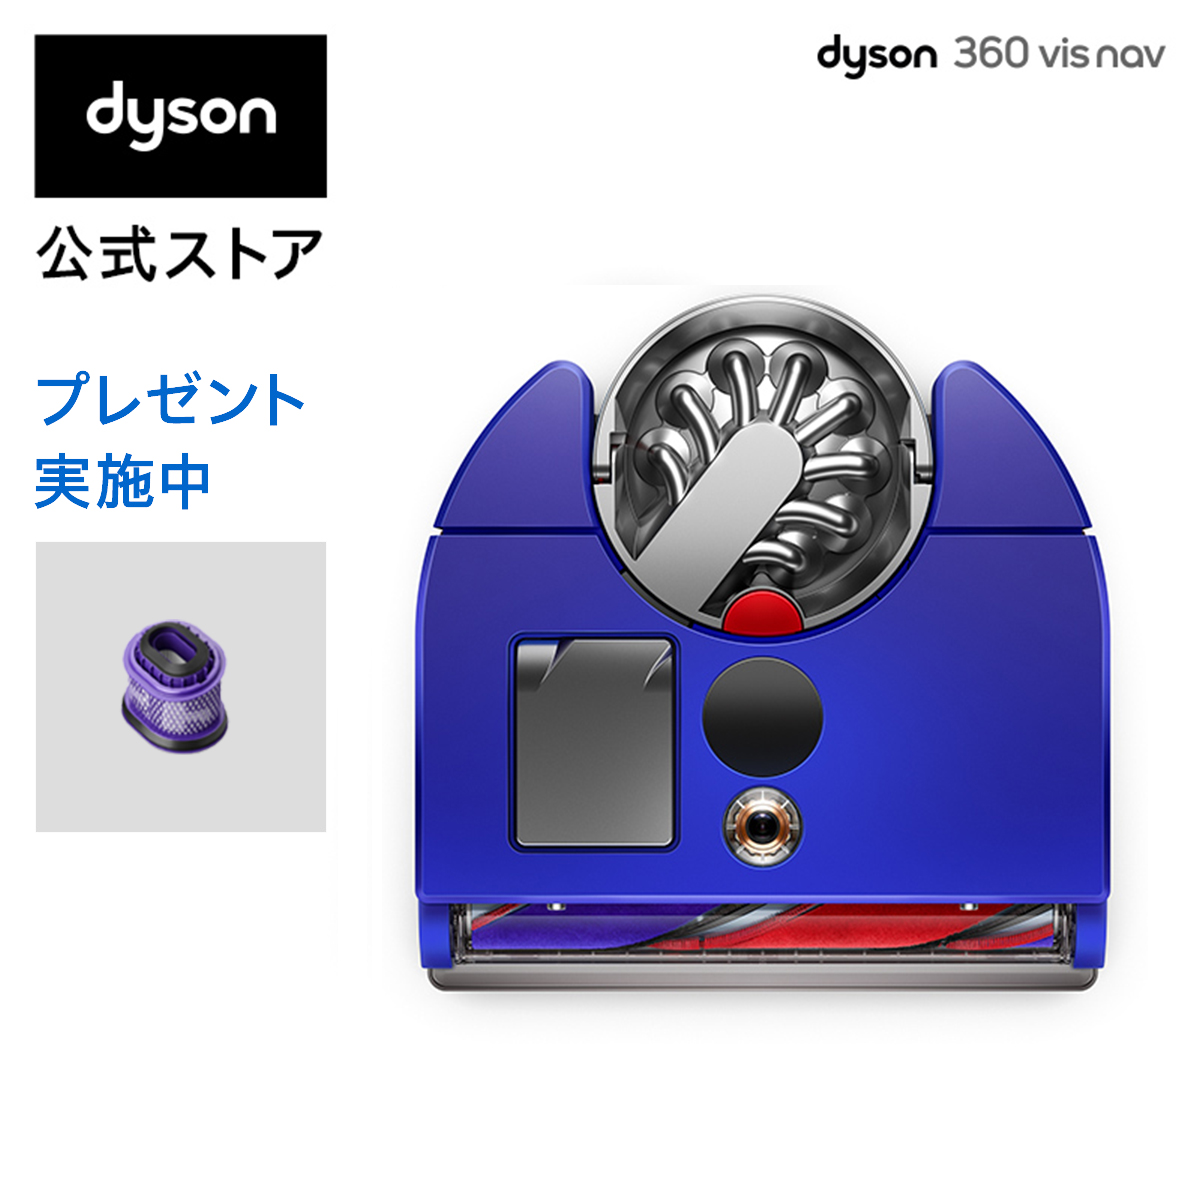 ダイソン Dyson 360 Vis Nav ロボット掃除機 サイクロン式 掃除機 dyson RB03 BN